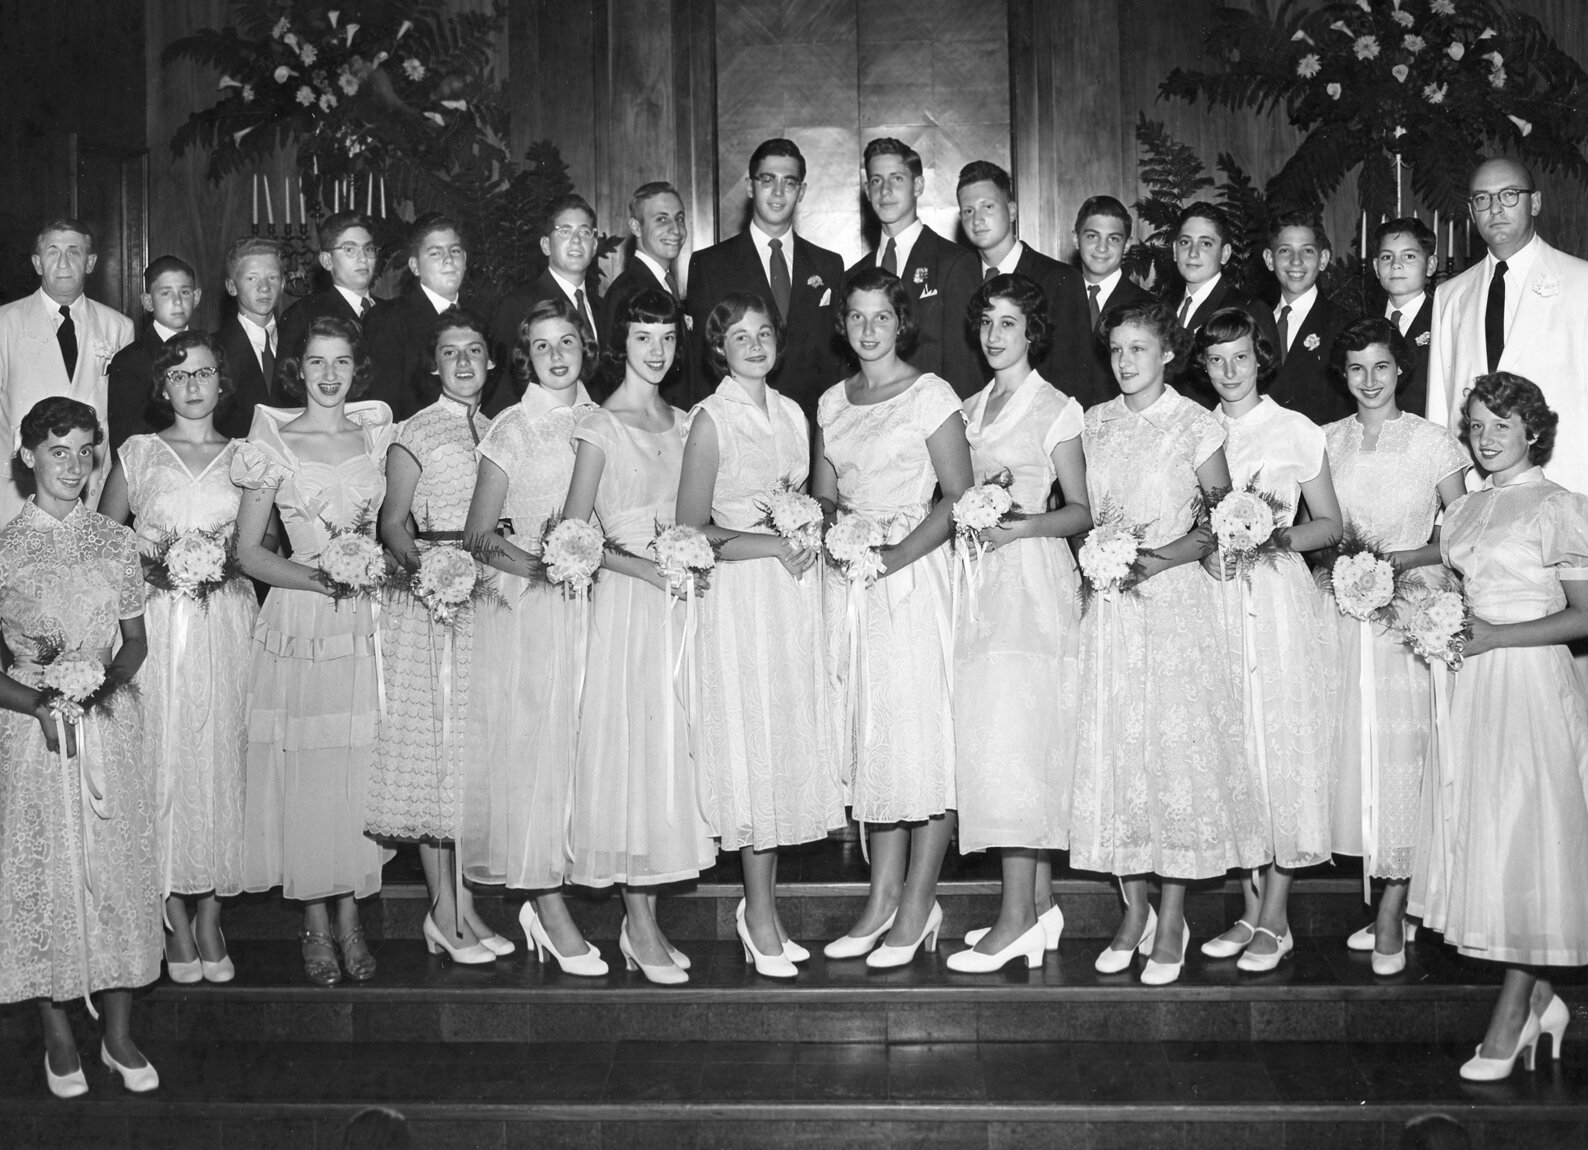 Beth El Confirmation Class in 1952